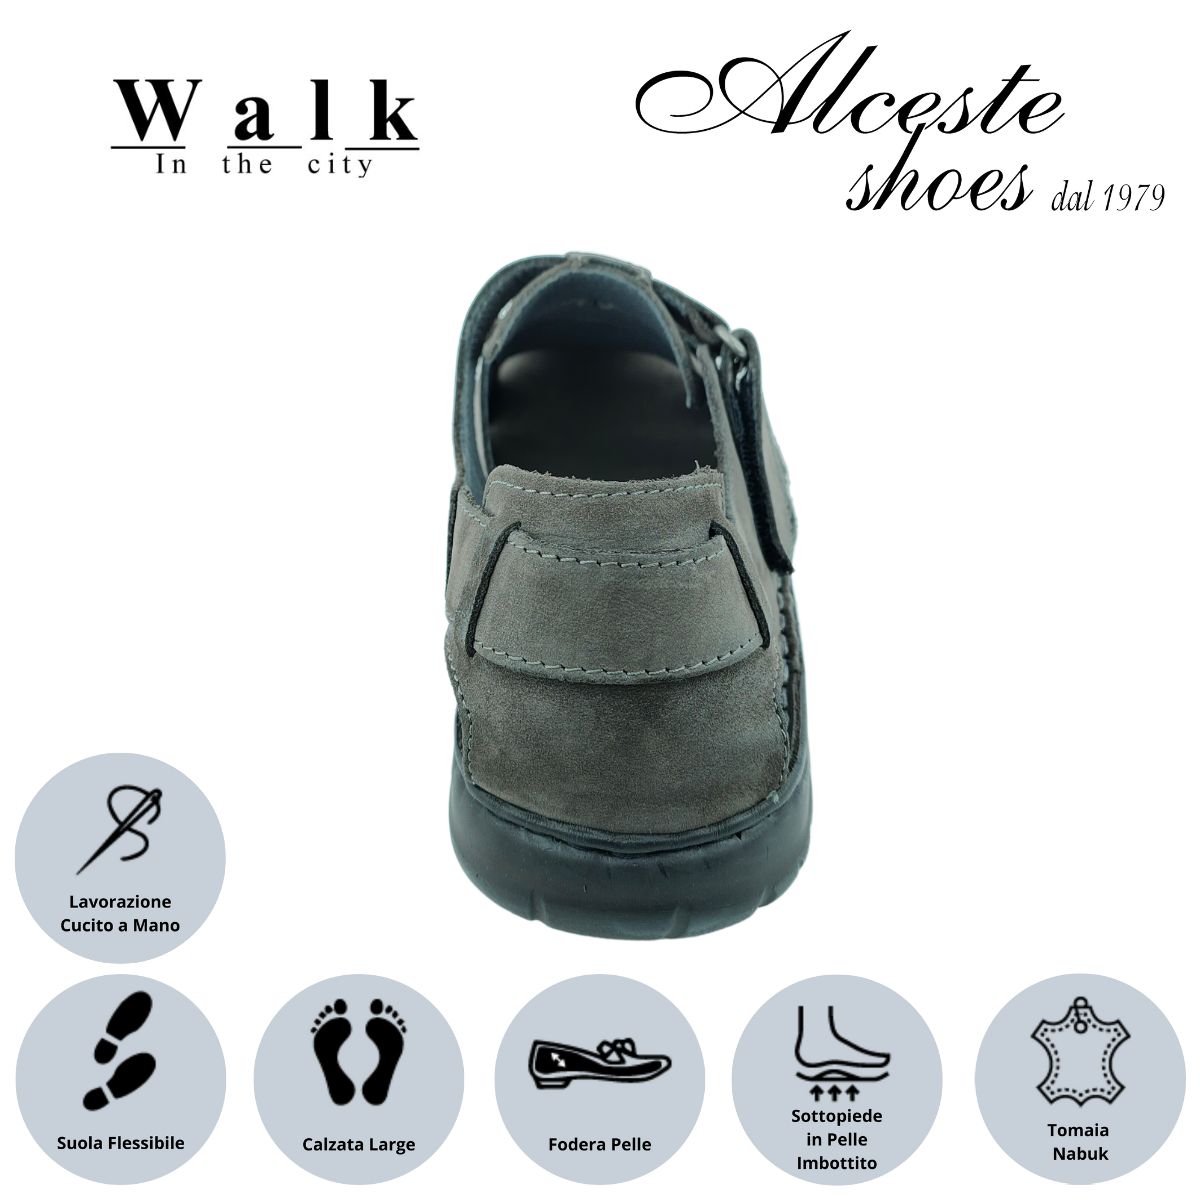 Sandalo Uomo Chiusura con Velcro "Walk in The City" Art. 20910 Nabuk Nero Alceste Shoes 24